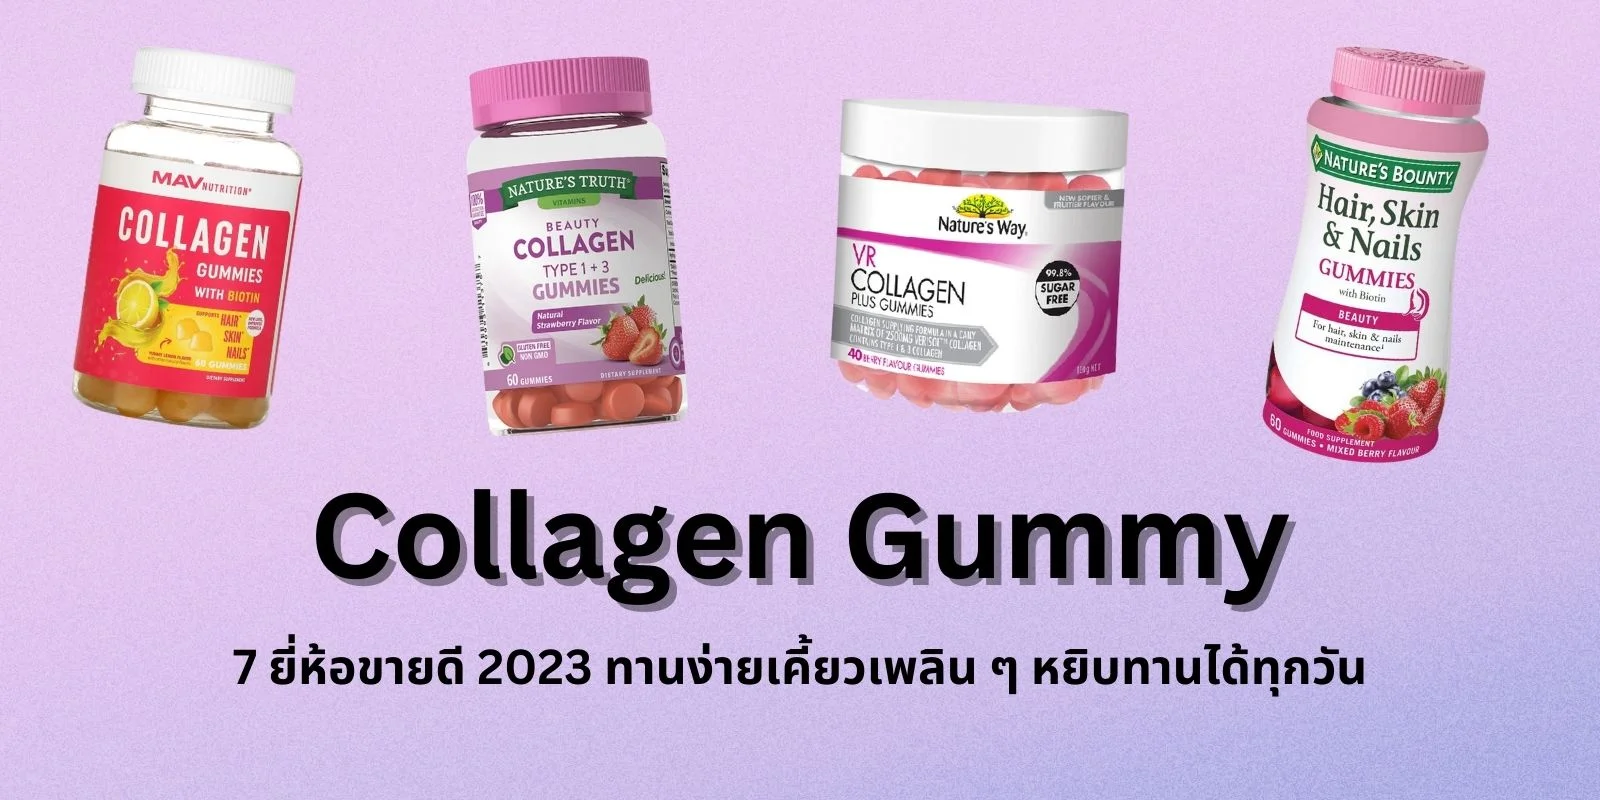 Collagen Gummy